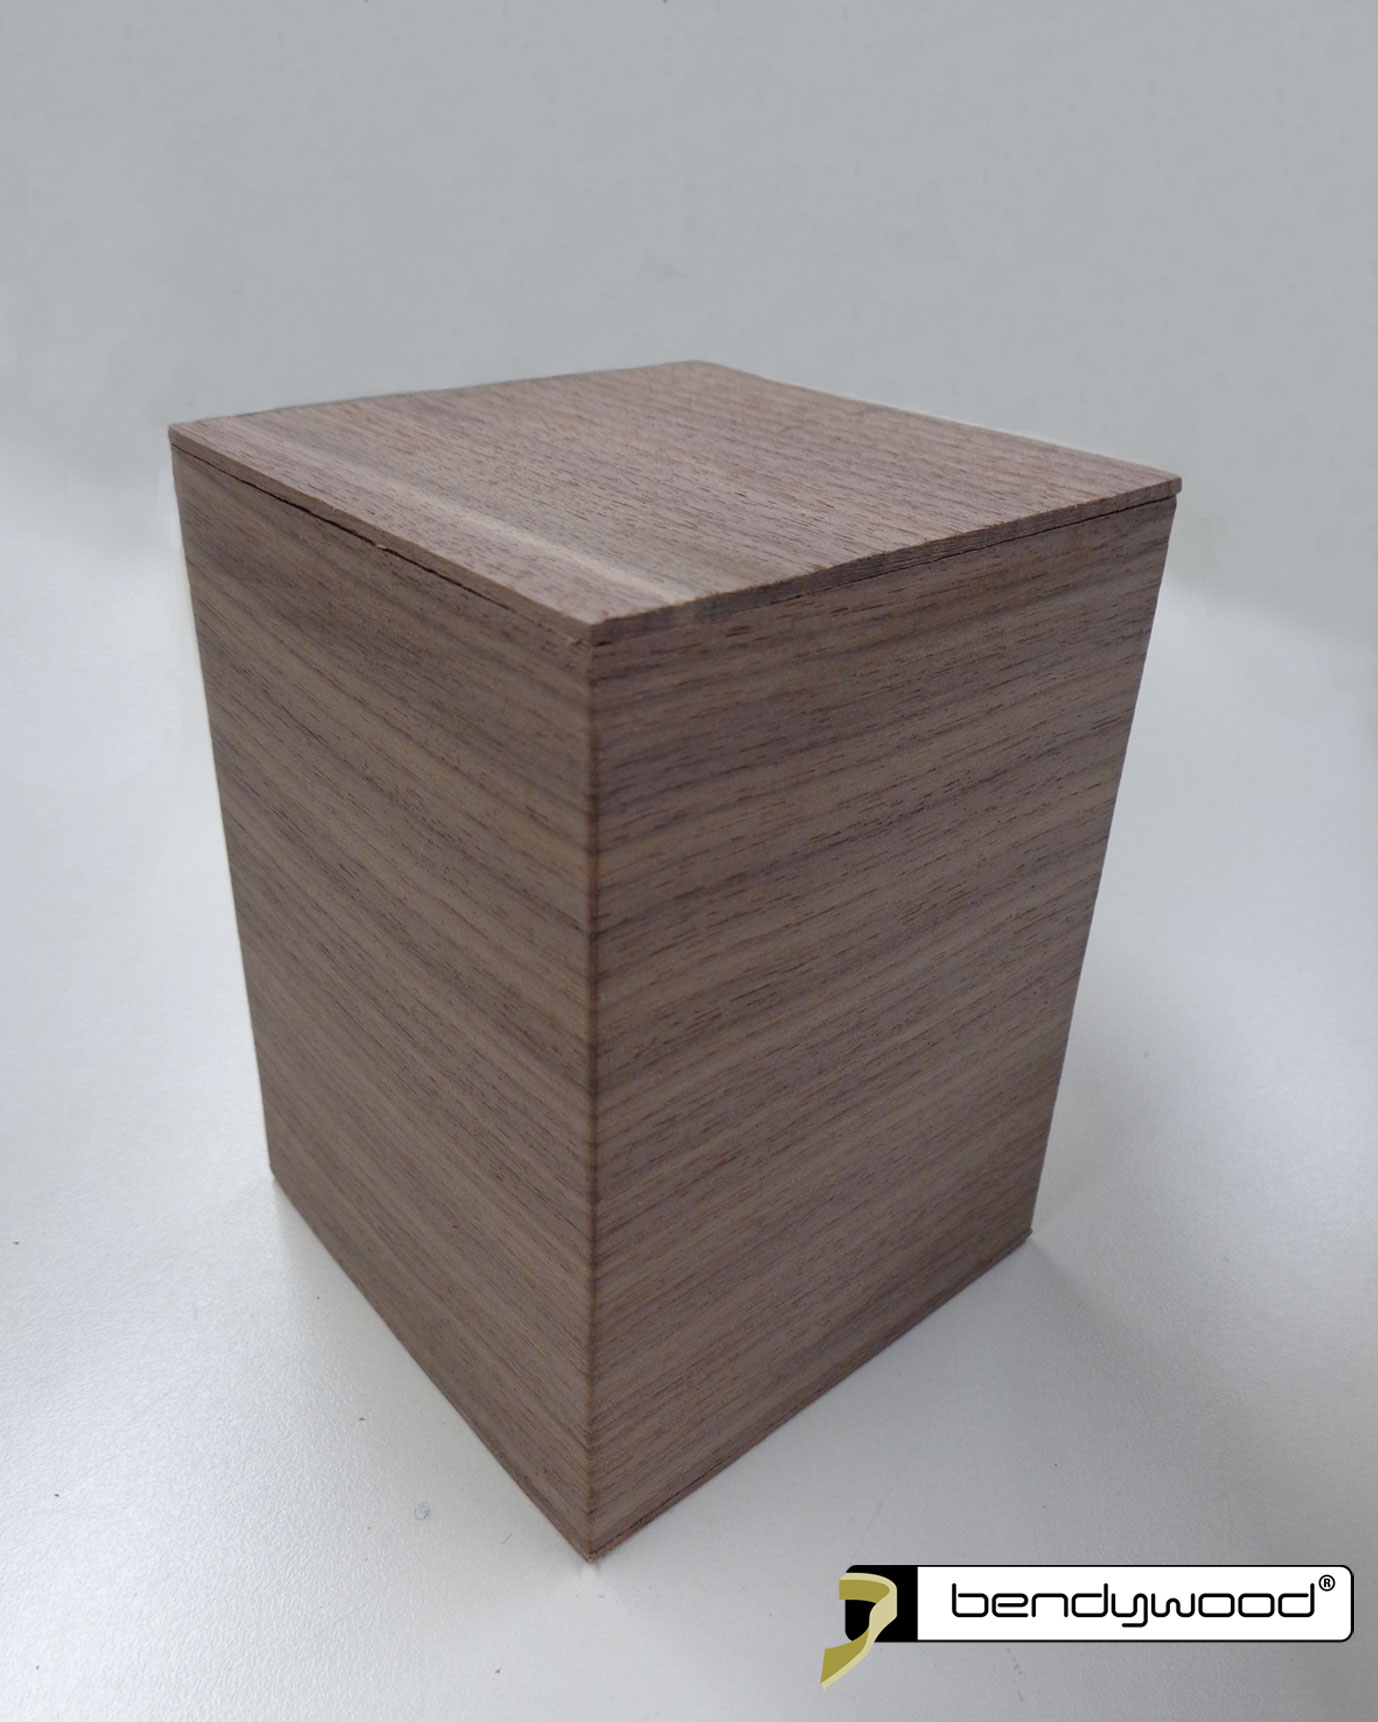 Caja en madera creada utilizando únicamente 1 pieza en nogal Bendywood®